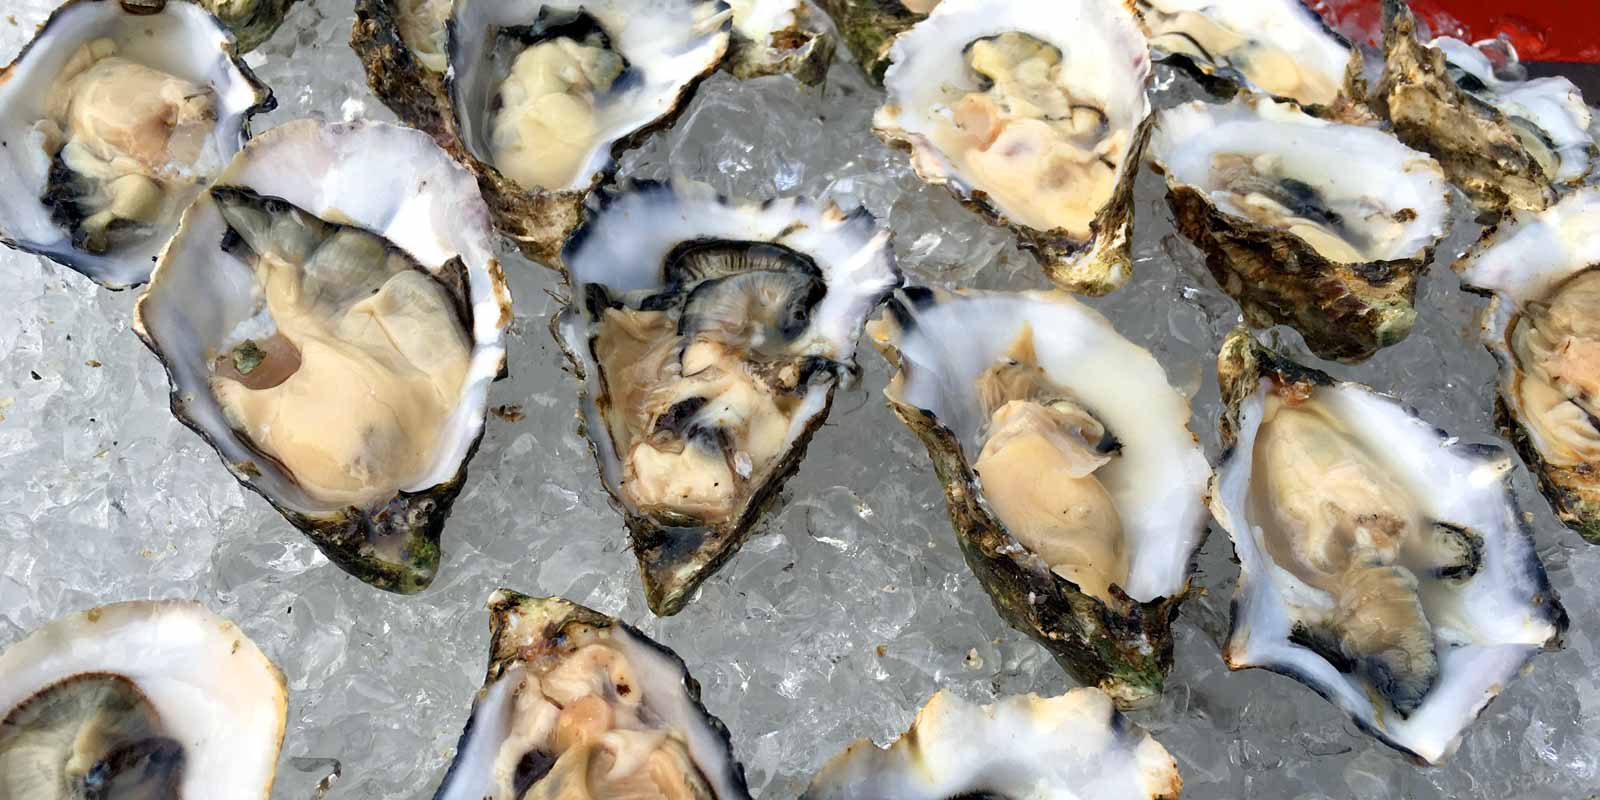 Gillardeau-oesters Fris, vlezig en met een jodiumsmaak, maar tegelijkertijd delicaat en met een licht nootachtige nasmaak: de Gillardeau-oesters uit Marennes-Oleron worden door kenners beschouwd als het allerlekkerste van het lekkerste.